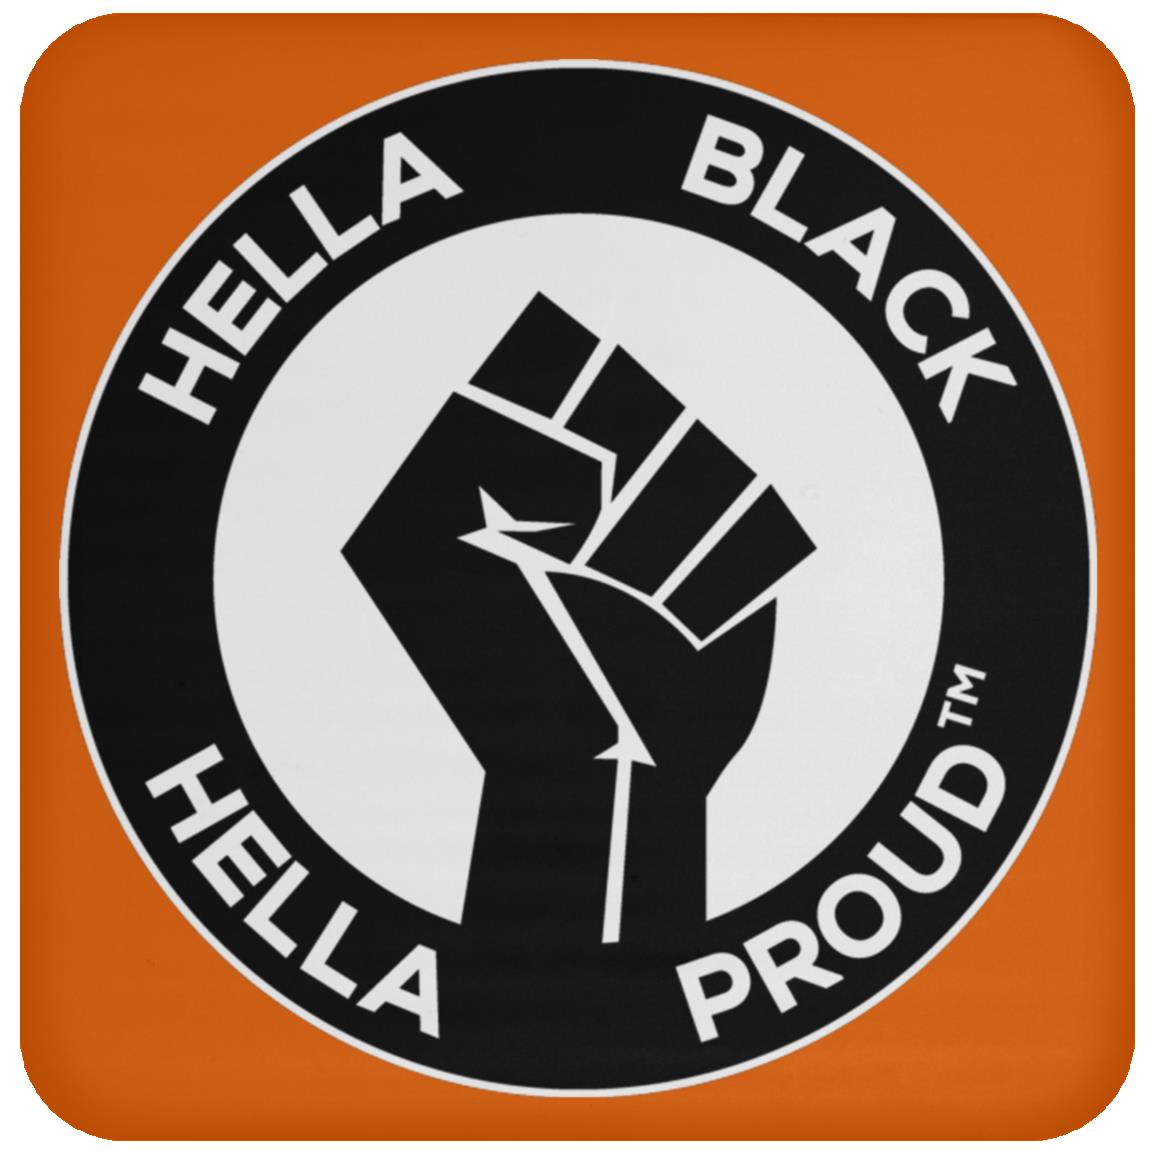 Hella Black Hella Proud. Drink Coaster